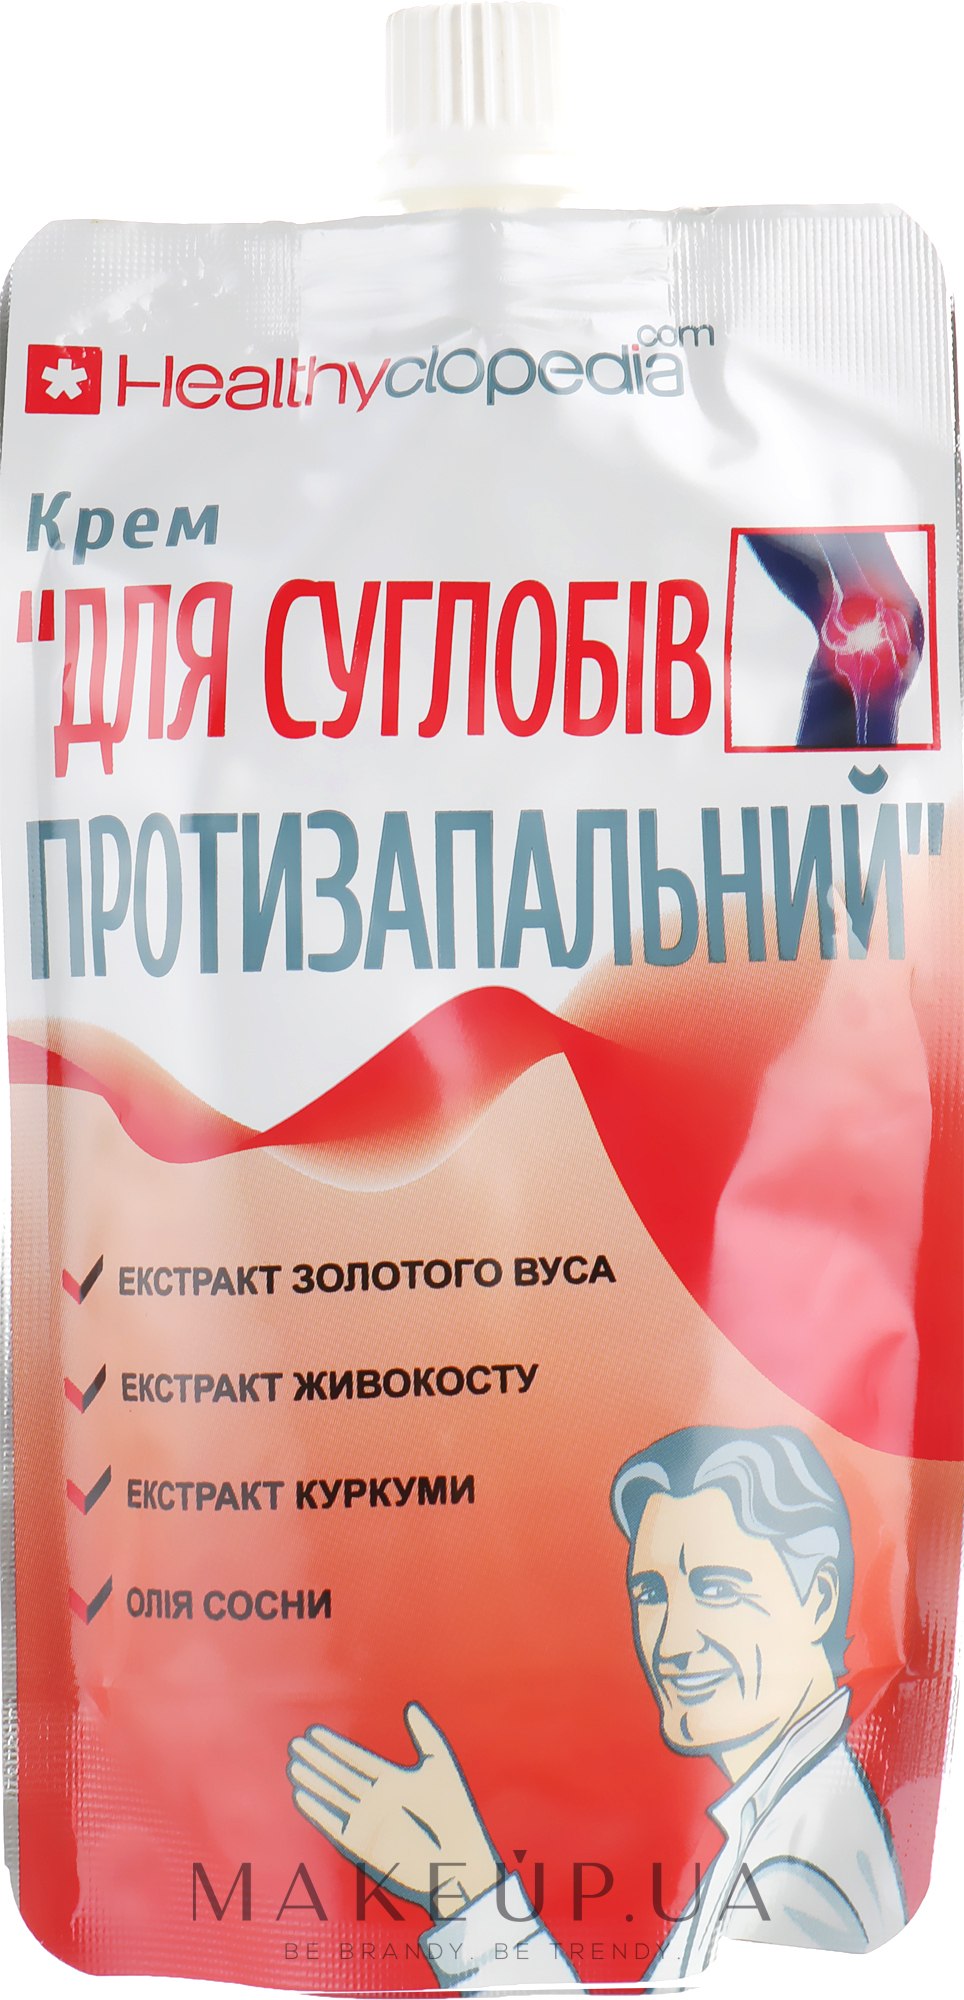 Активный противовоспалительный крем Cure Skin - купить в интернет-магазине kormstroytorg.ru